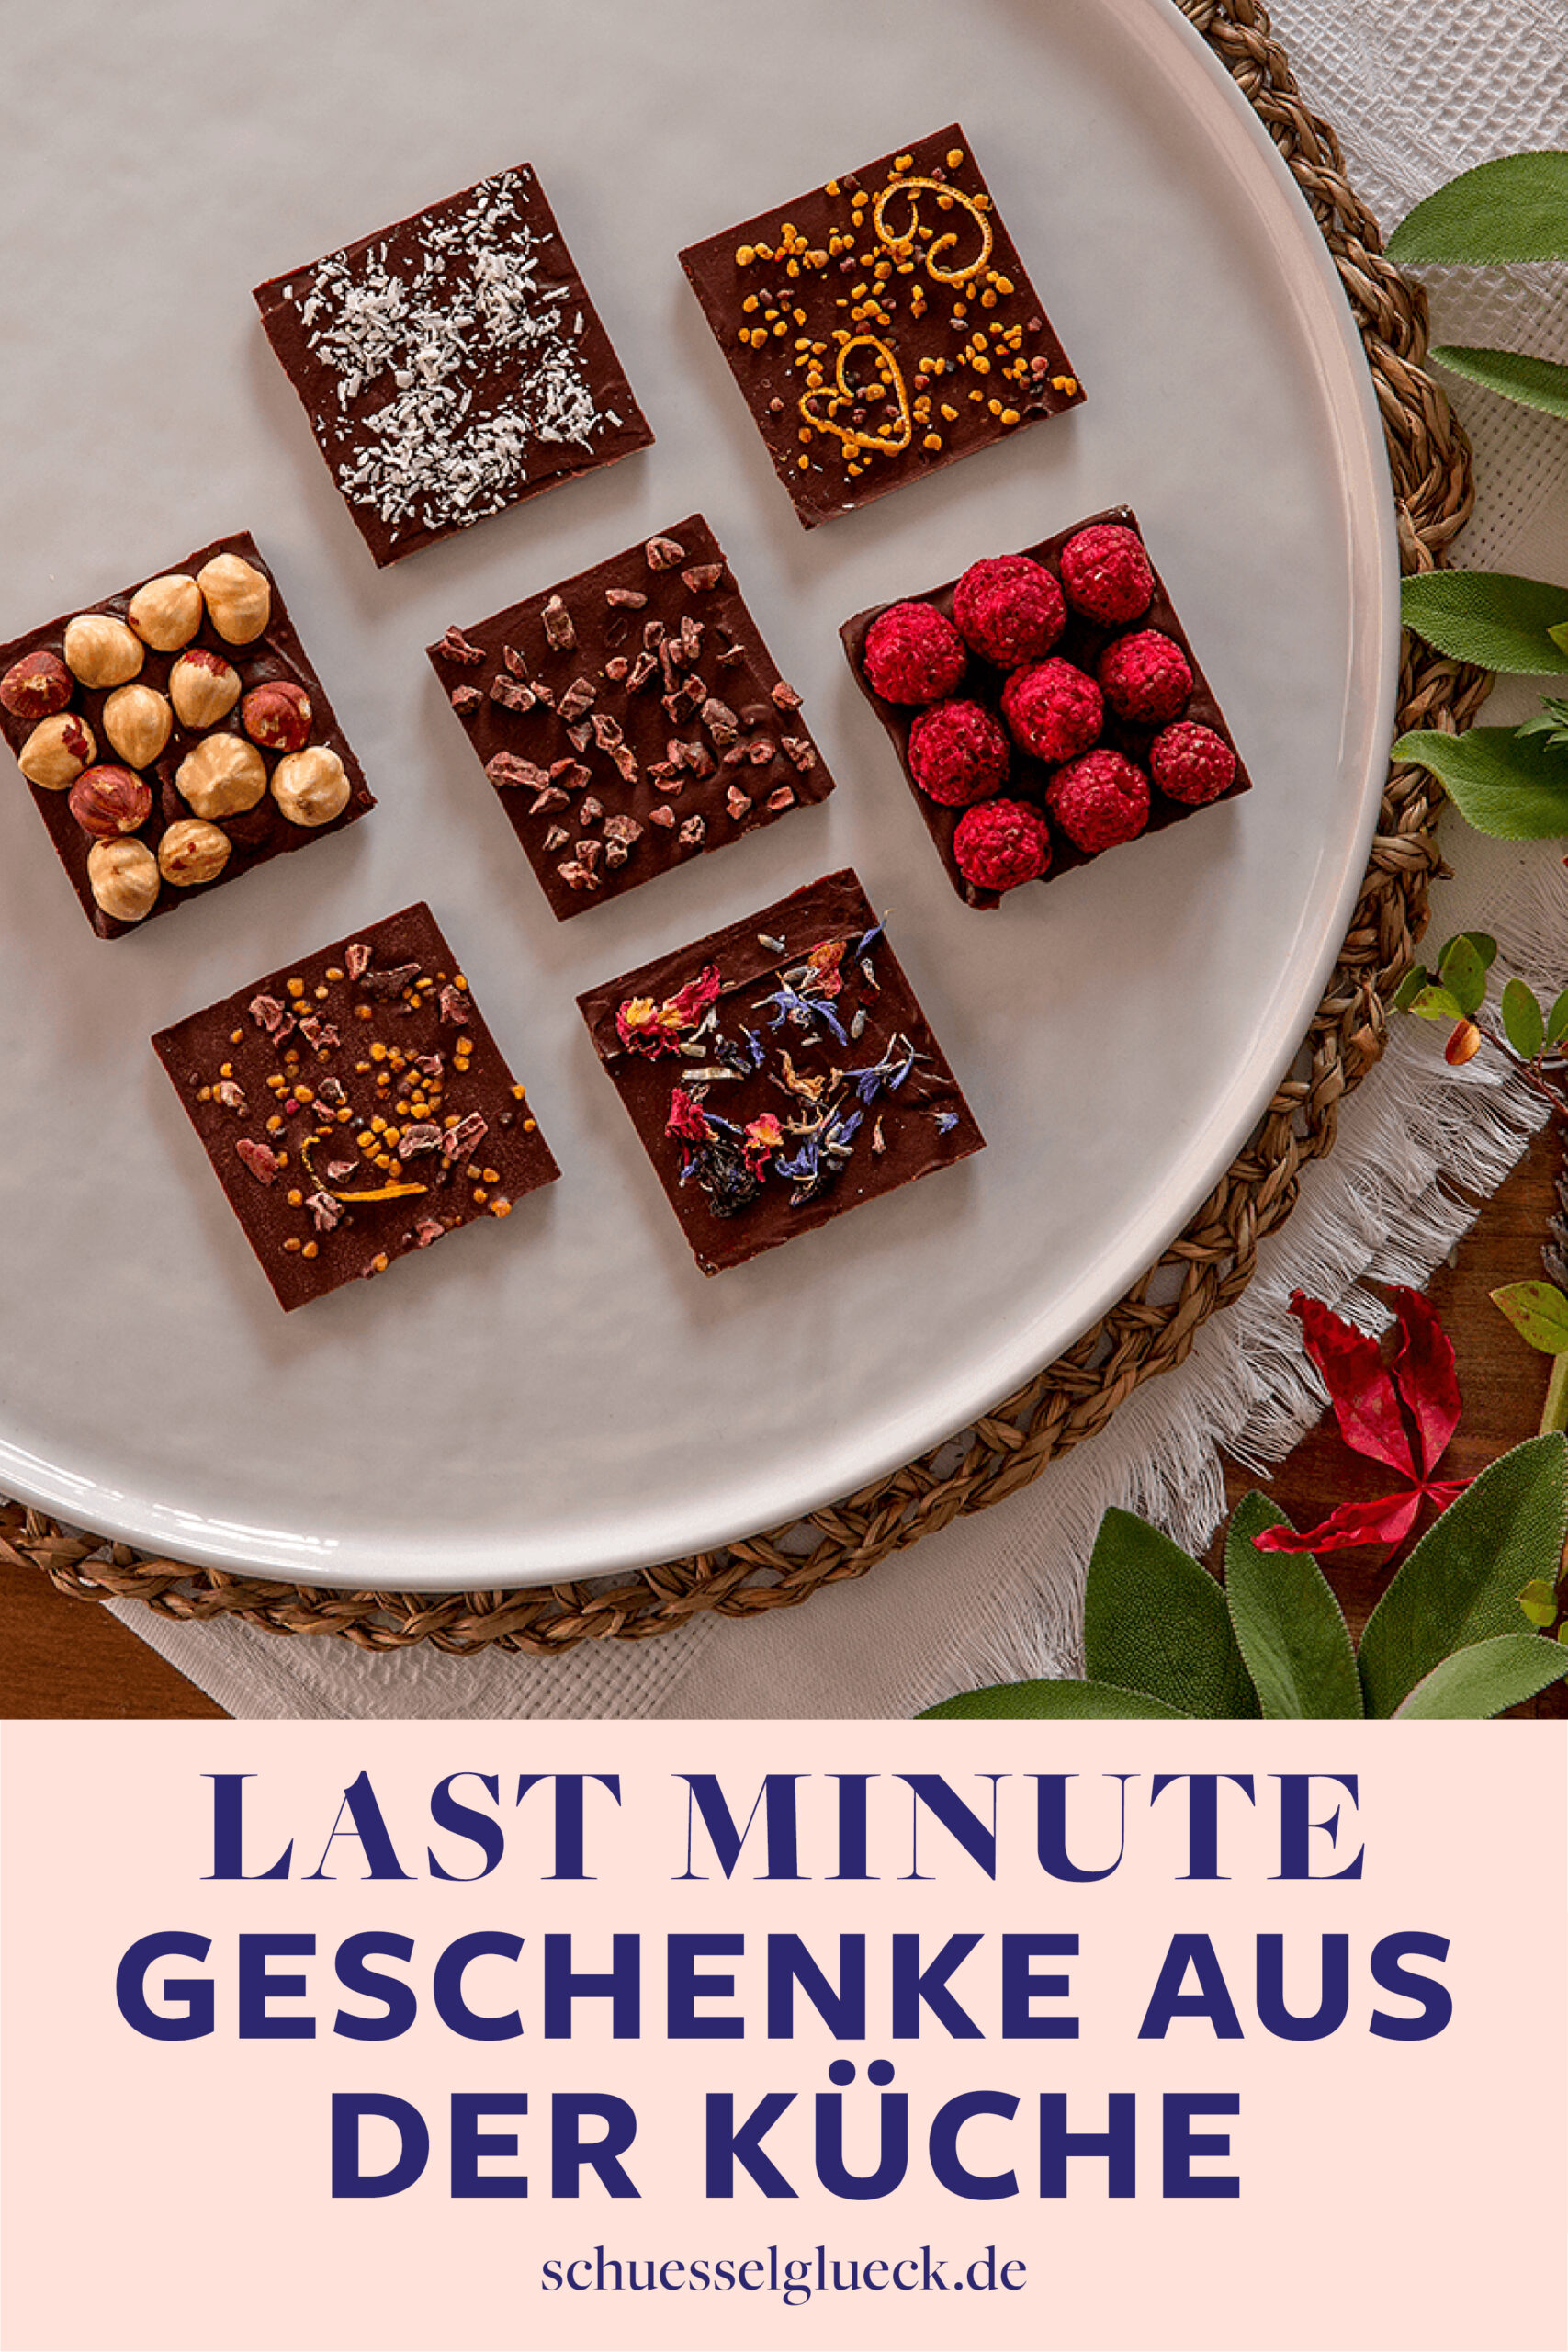 Die sieben besten Last Minute Geschenkideen aus der Küche – superschnell und einfach gemacht!